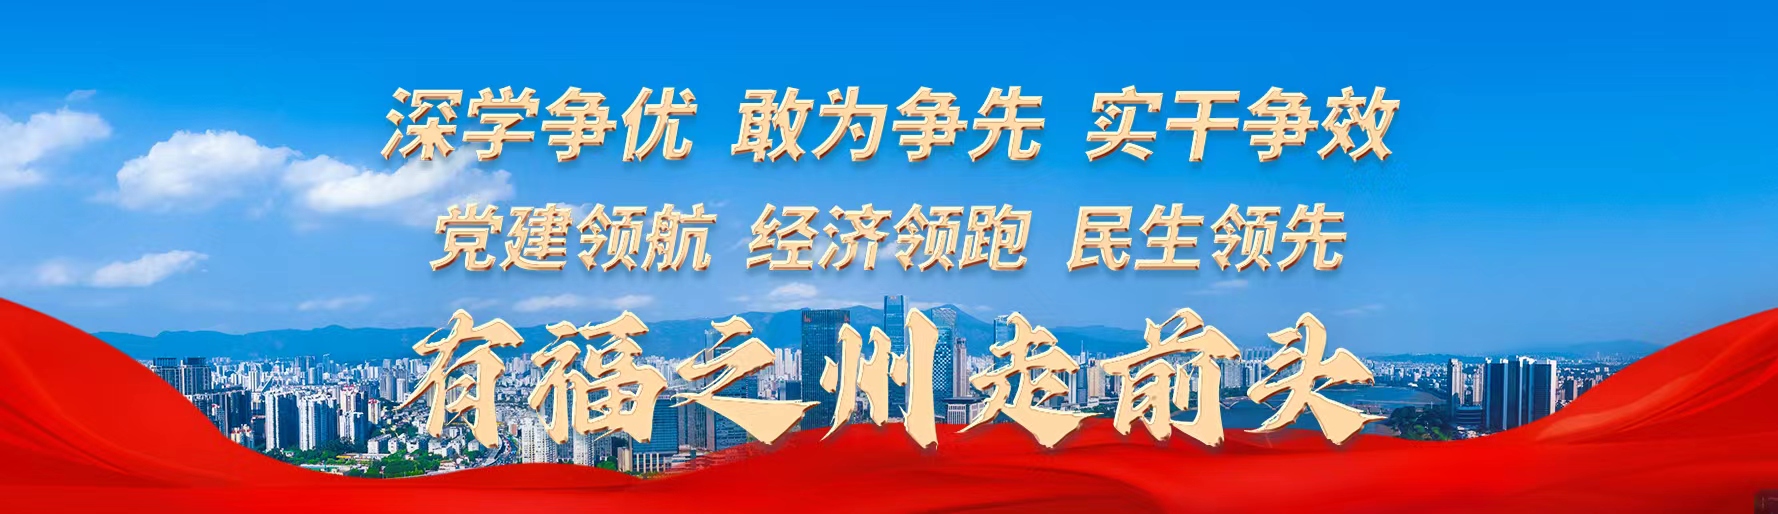 江阴港区综合物流业务实现首季“开门红”